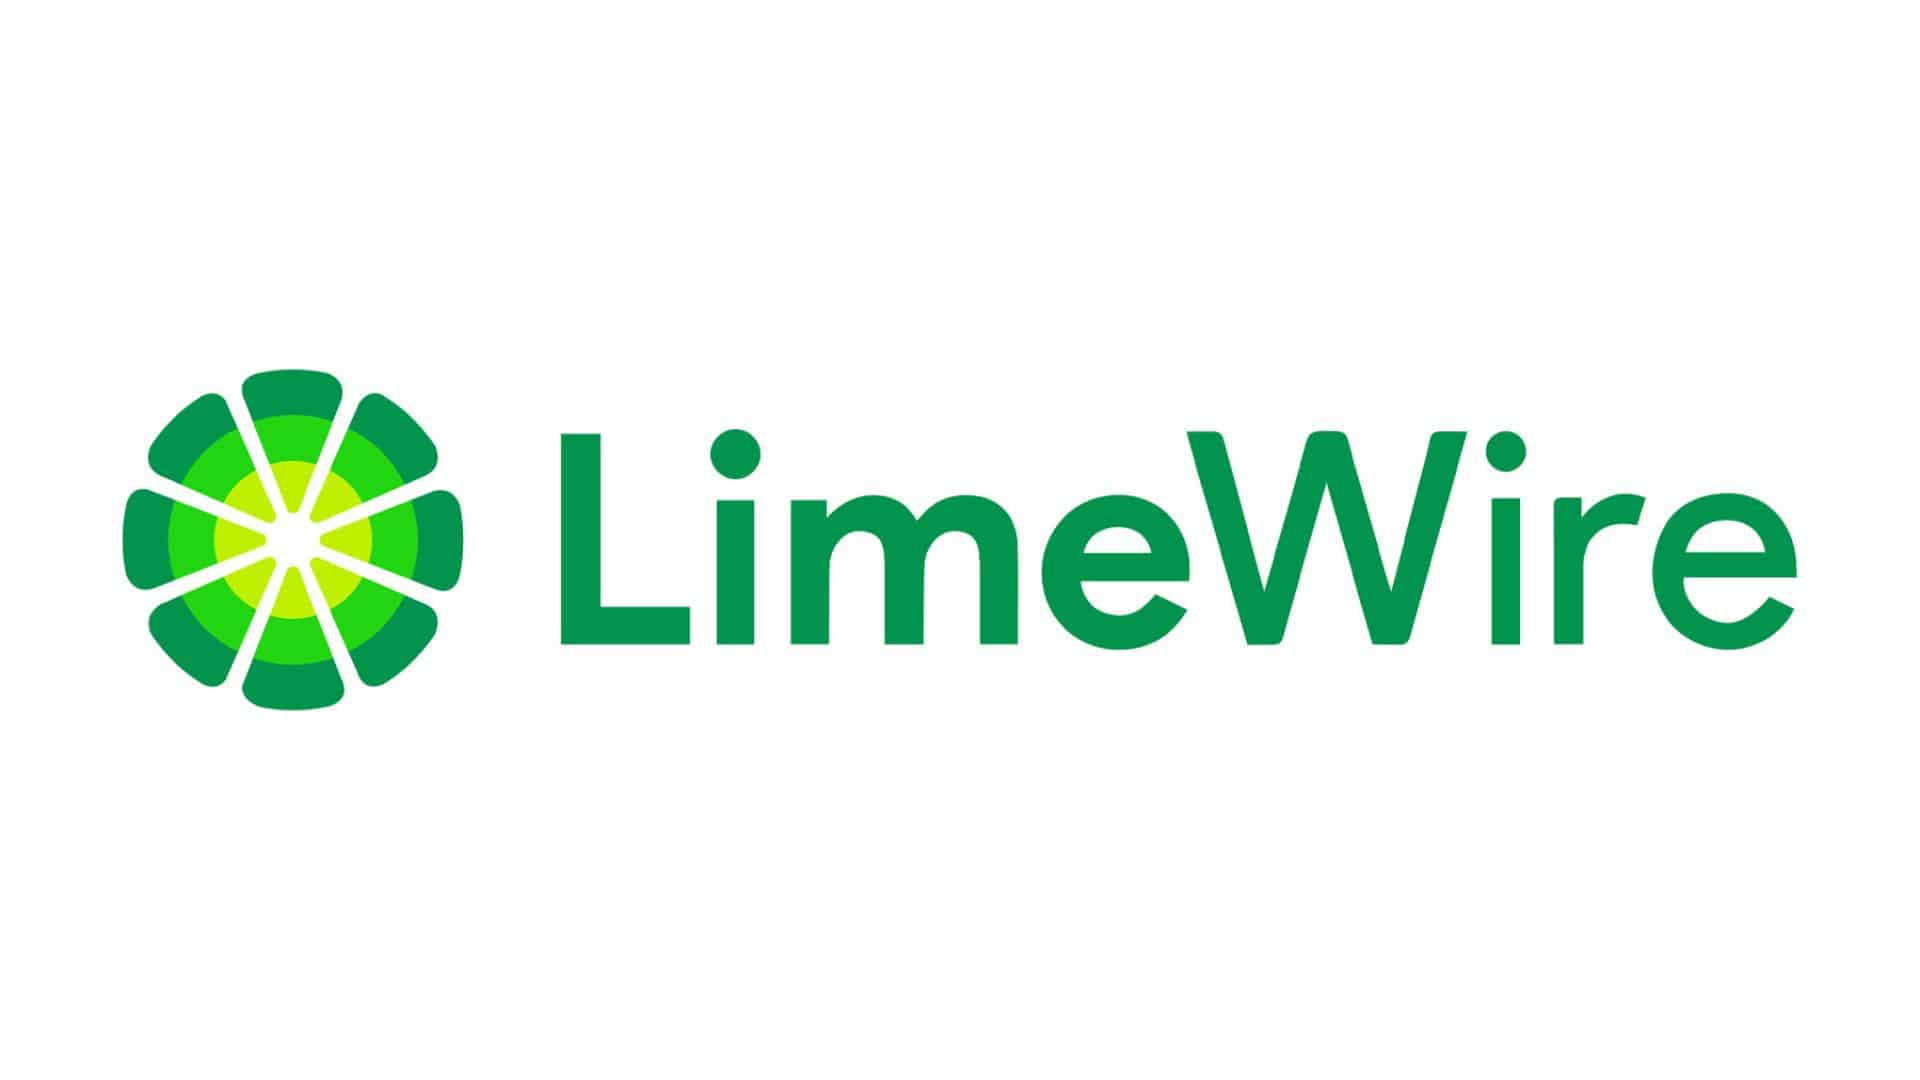 Prédiction de prix Limewire : LMWR augmente de 17 % pour éviter le crash de la cryptographie alors que la nouvelle ICO Pepe Unchained devient parabolique